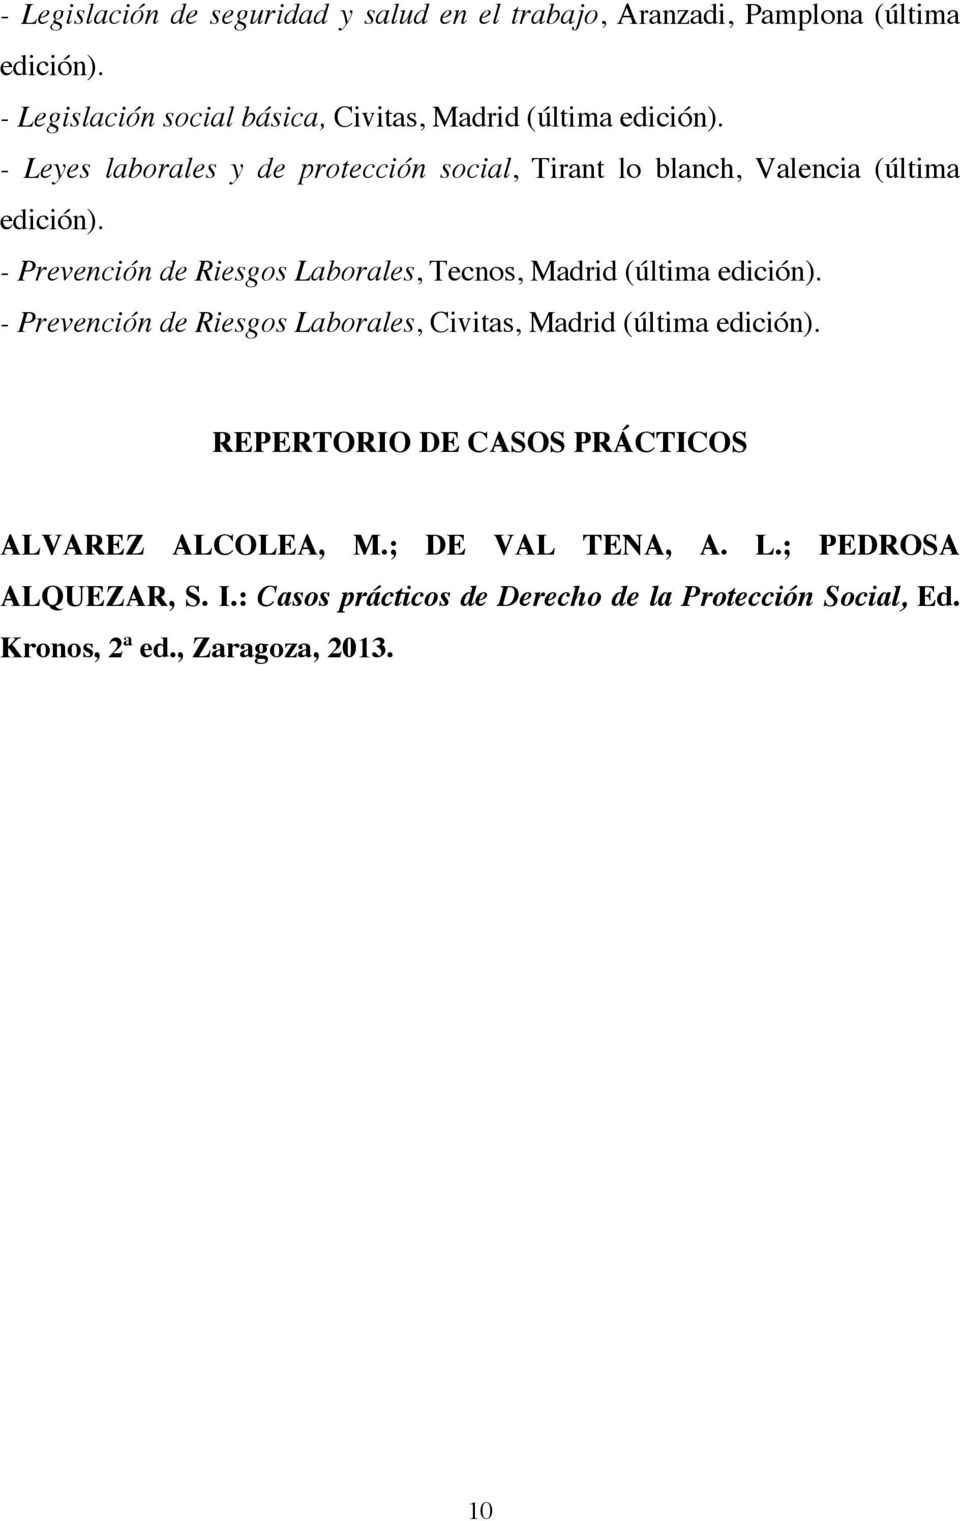 - Leyes laborales y de protección social, Tirant lo blanch, Valencia (última edición).